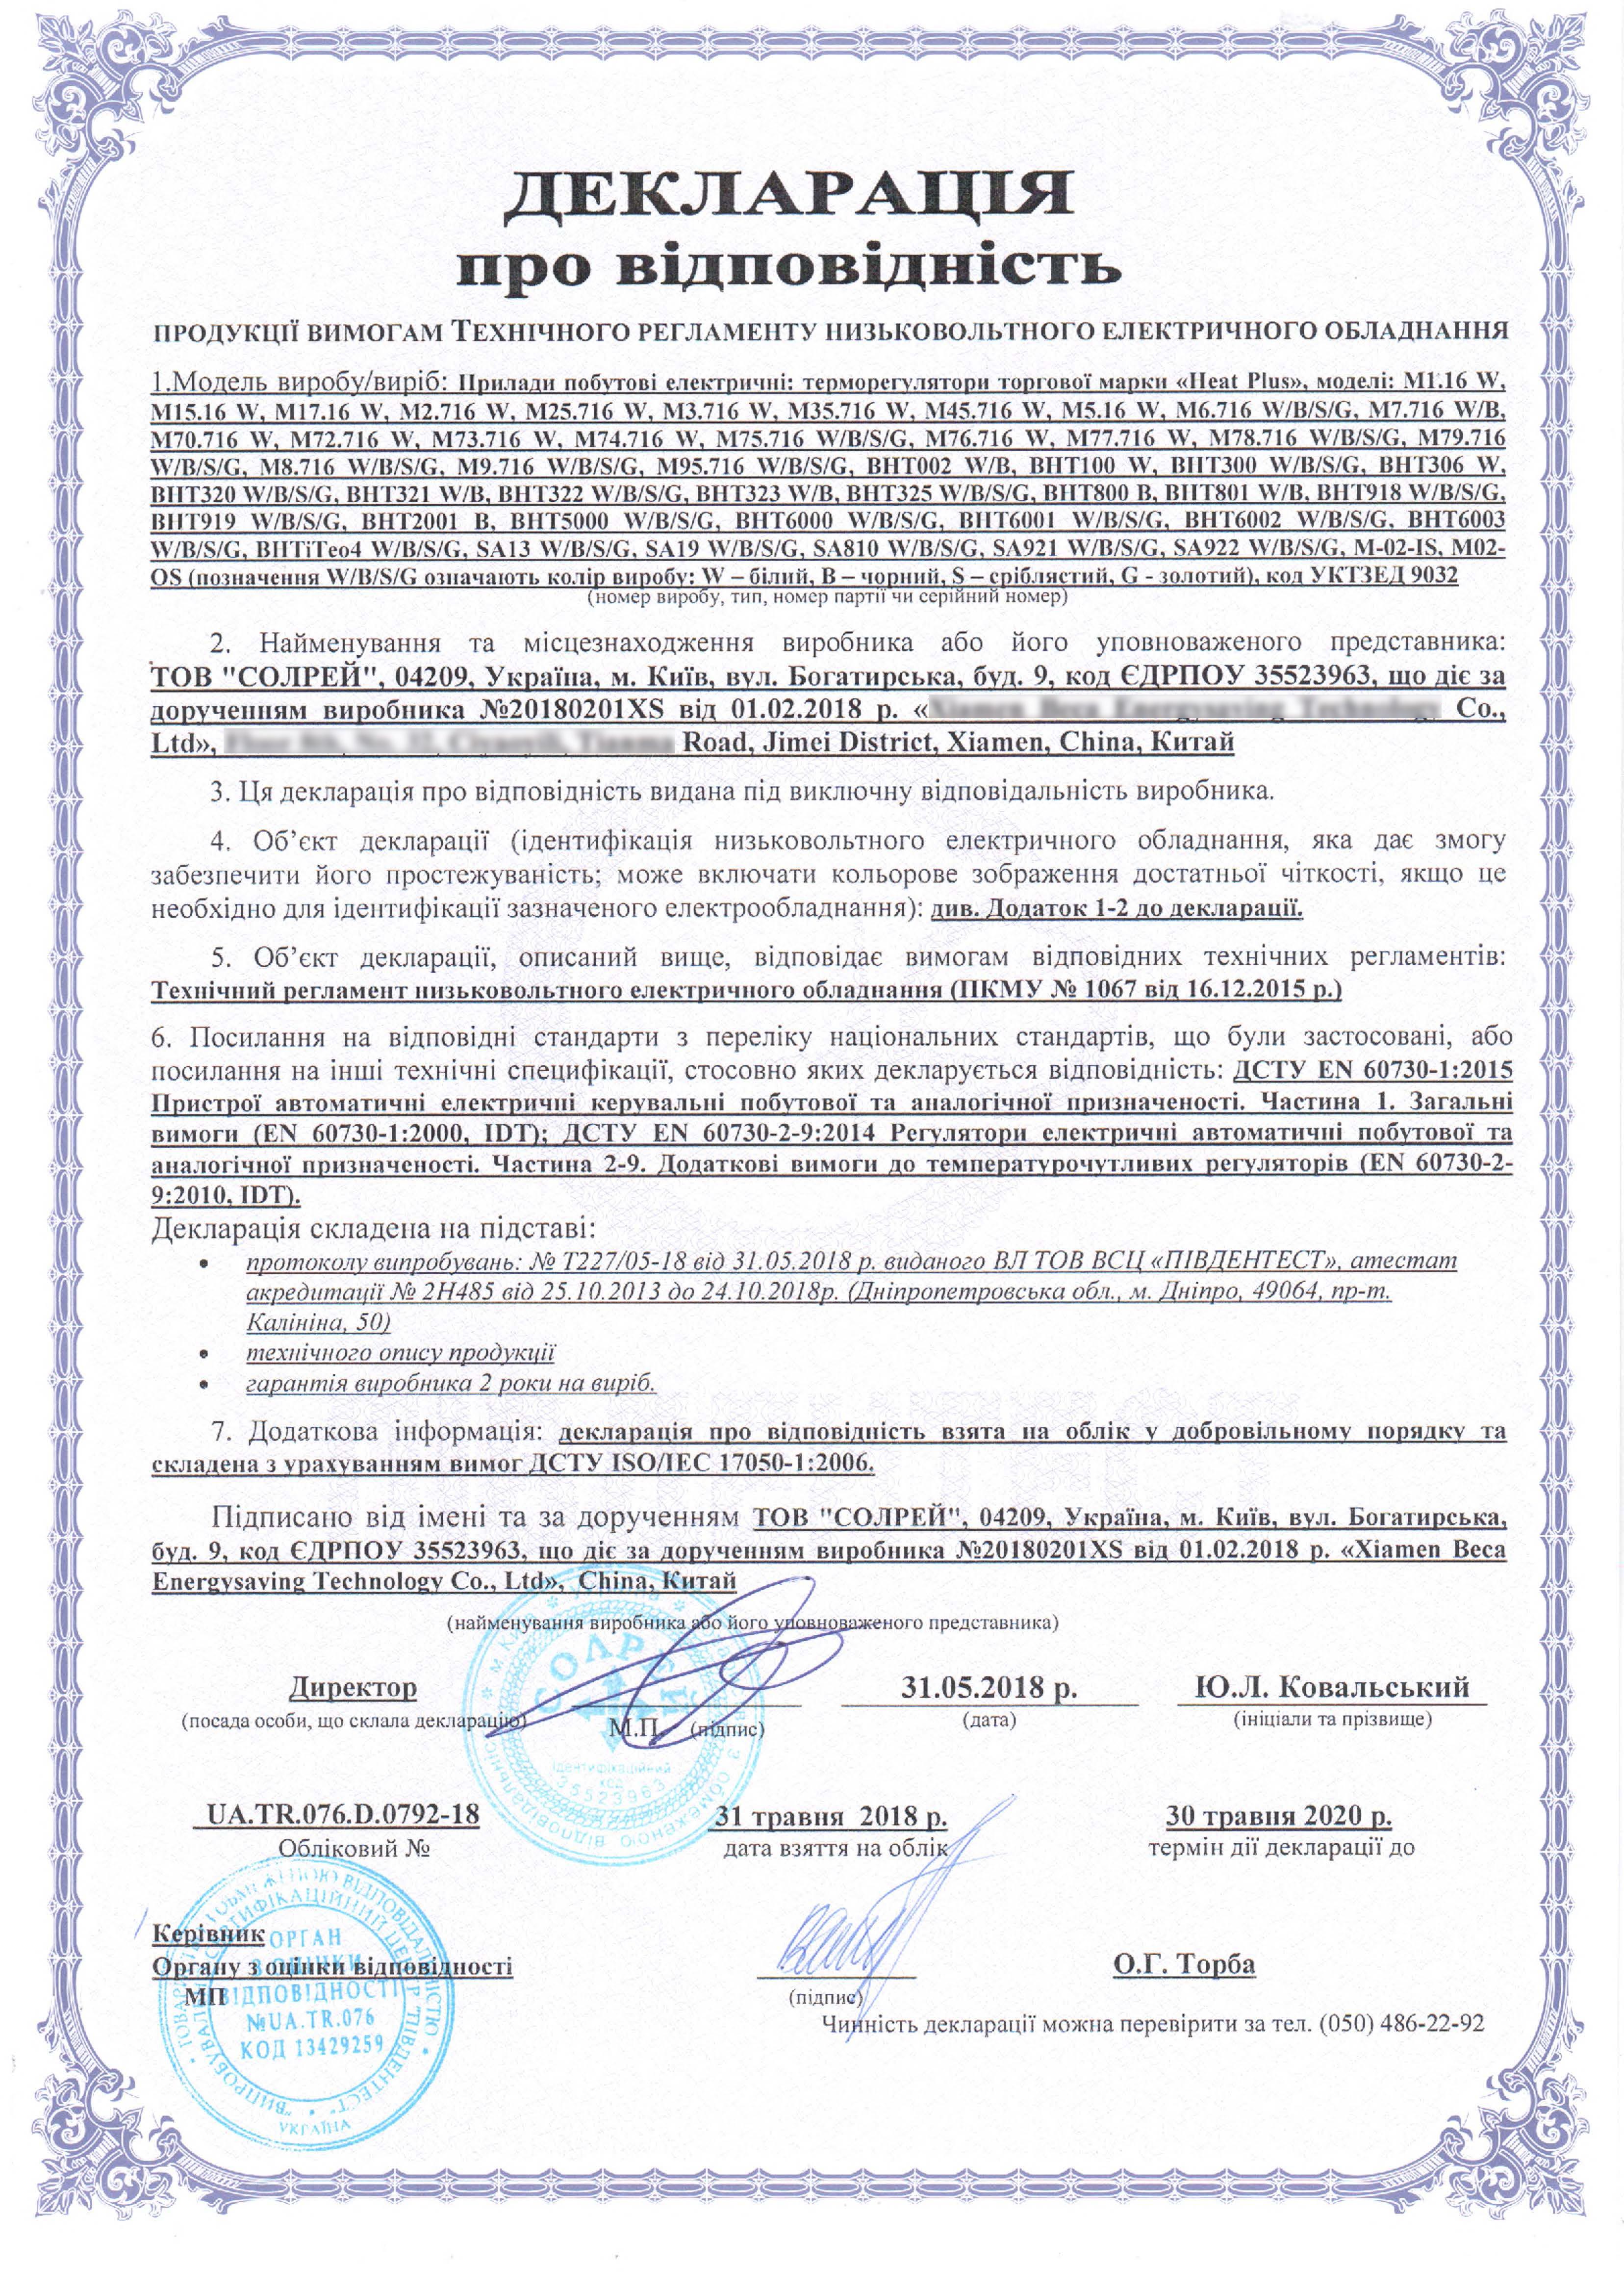 Декларация соответствия требованиям к низковольтному оборудованию для терморегуляторов HEAT PLUS Фото